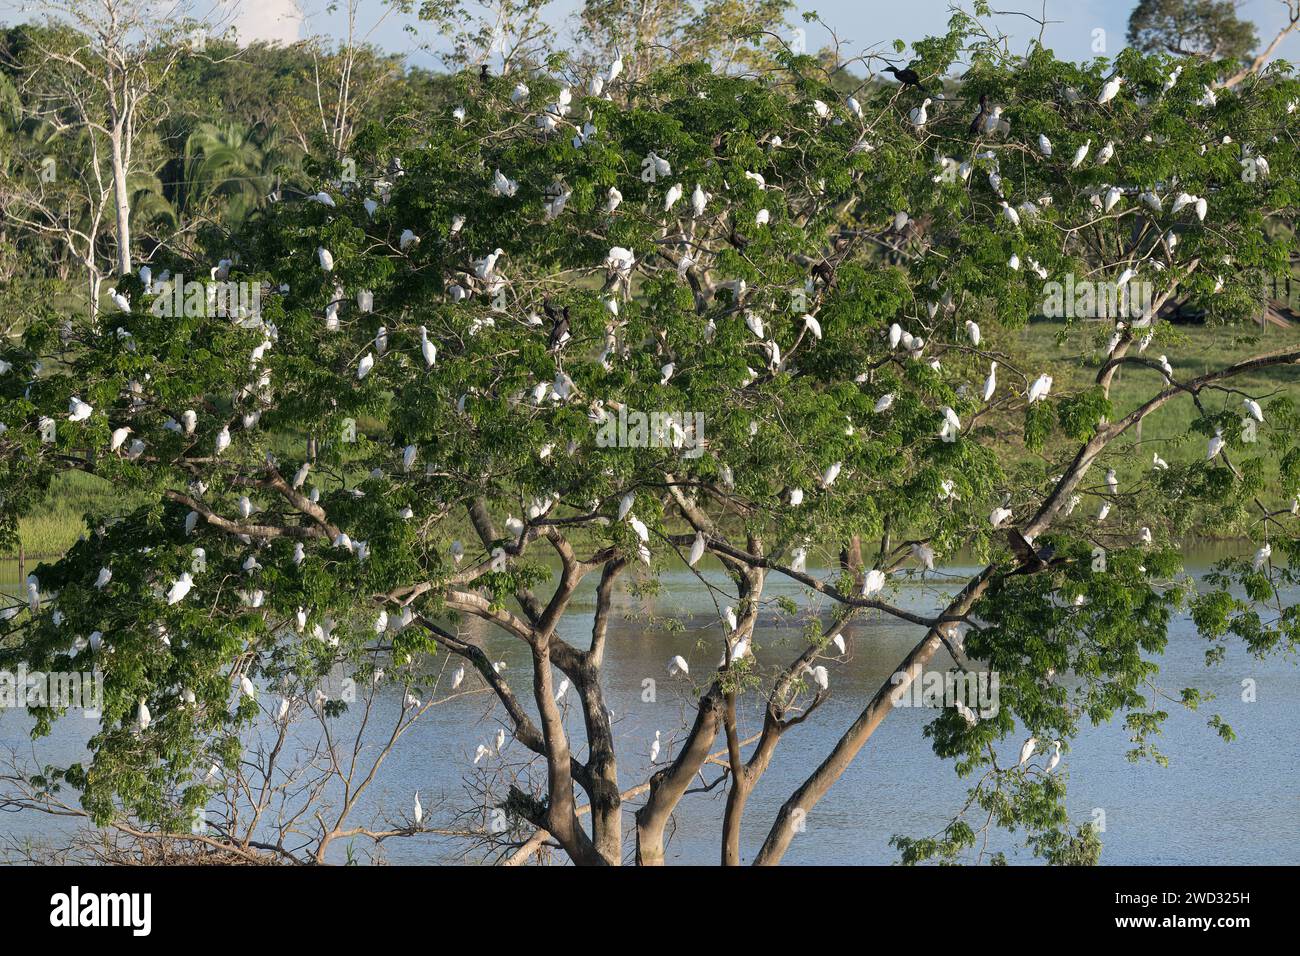 WESTERN Cattle Egrets, Bubulcus ibis, cammina su un albero, tardo pomeriggio, bacino amazzonico, Brasile Foto Stock